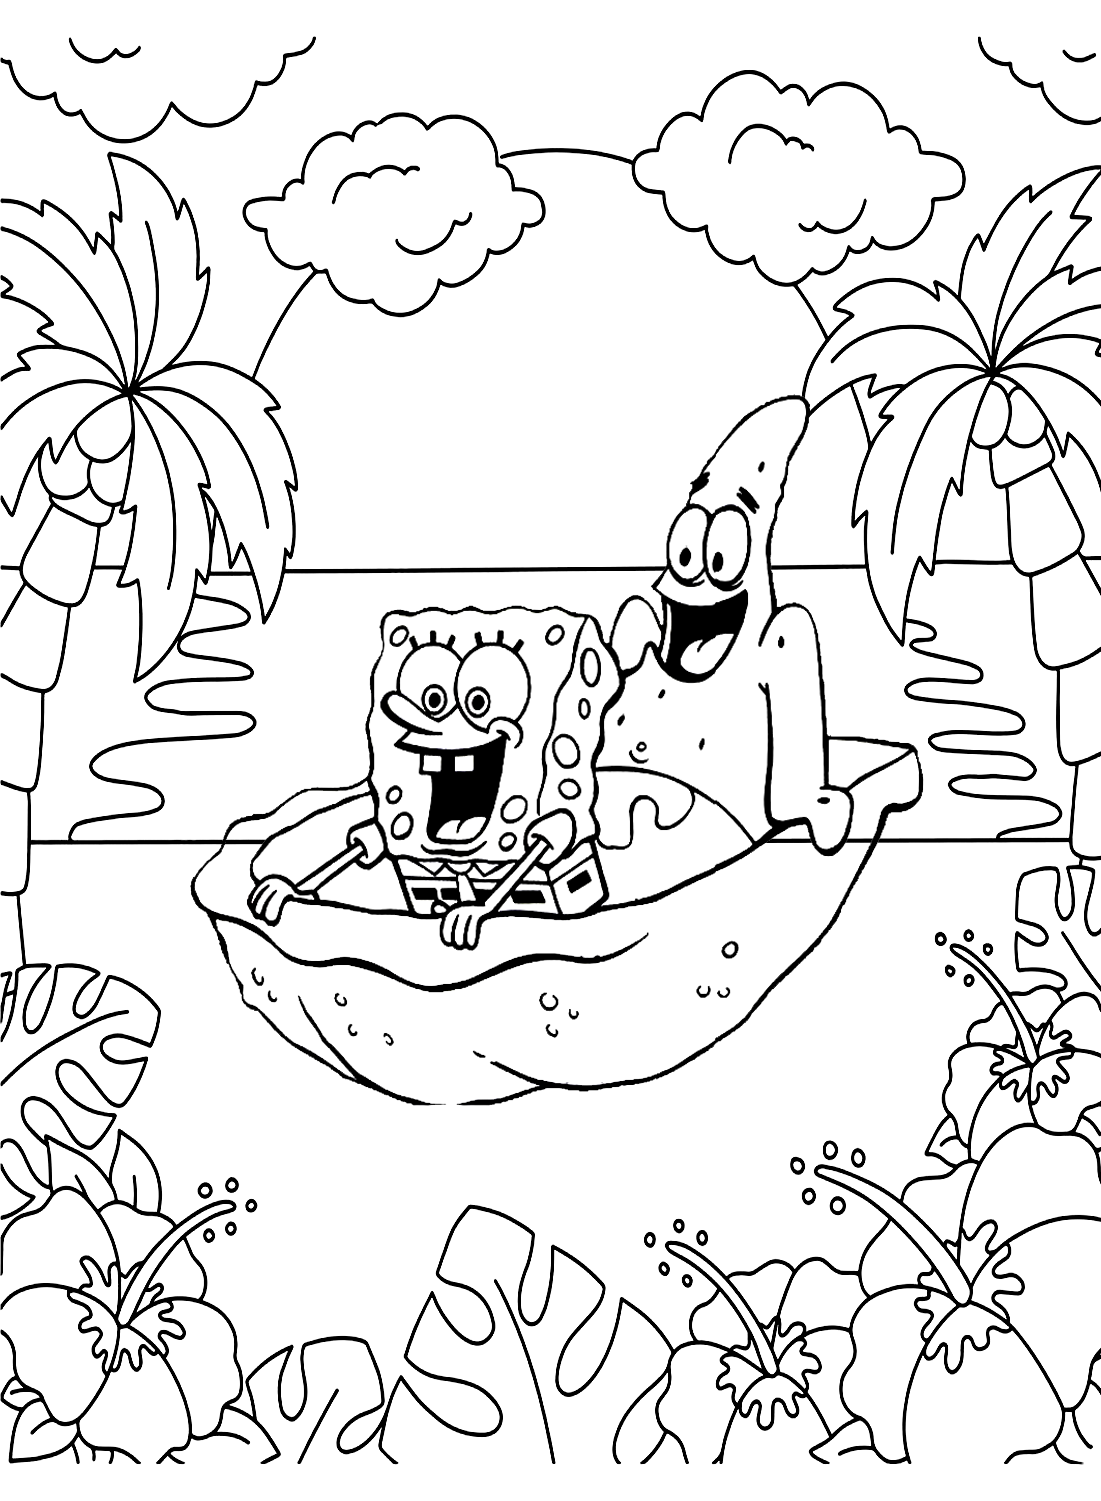 Patrick e Spongebob Pagina a colori da Spongebob